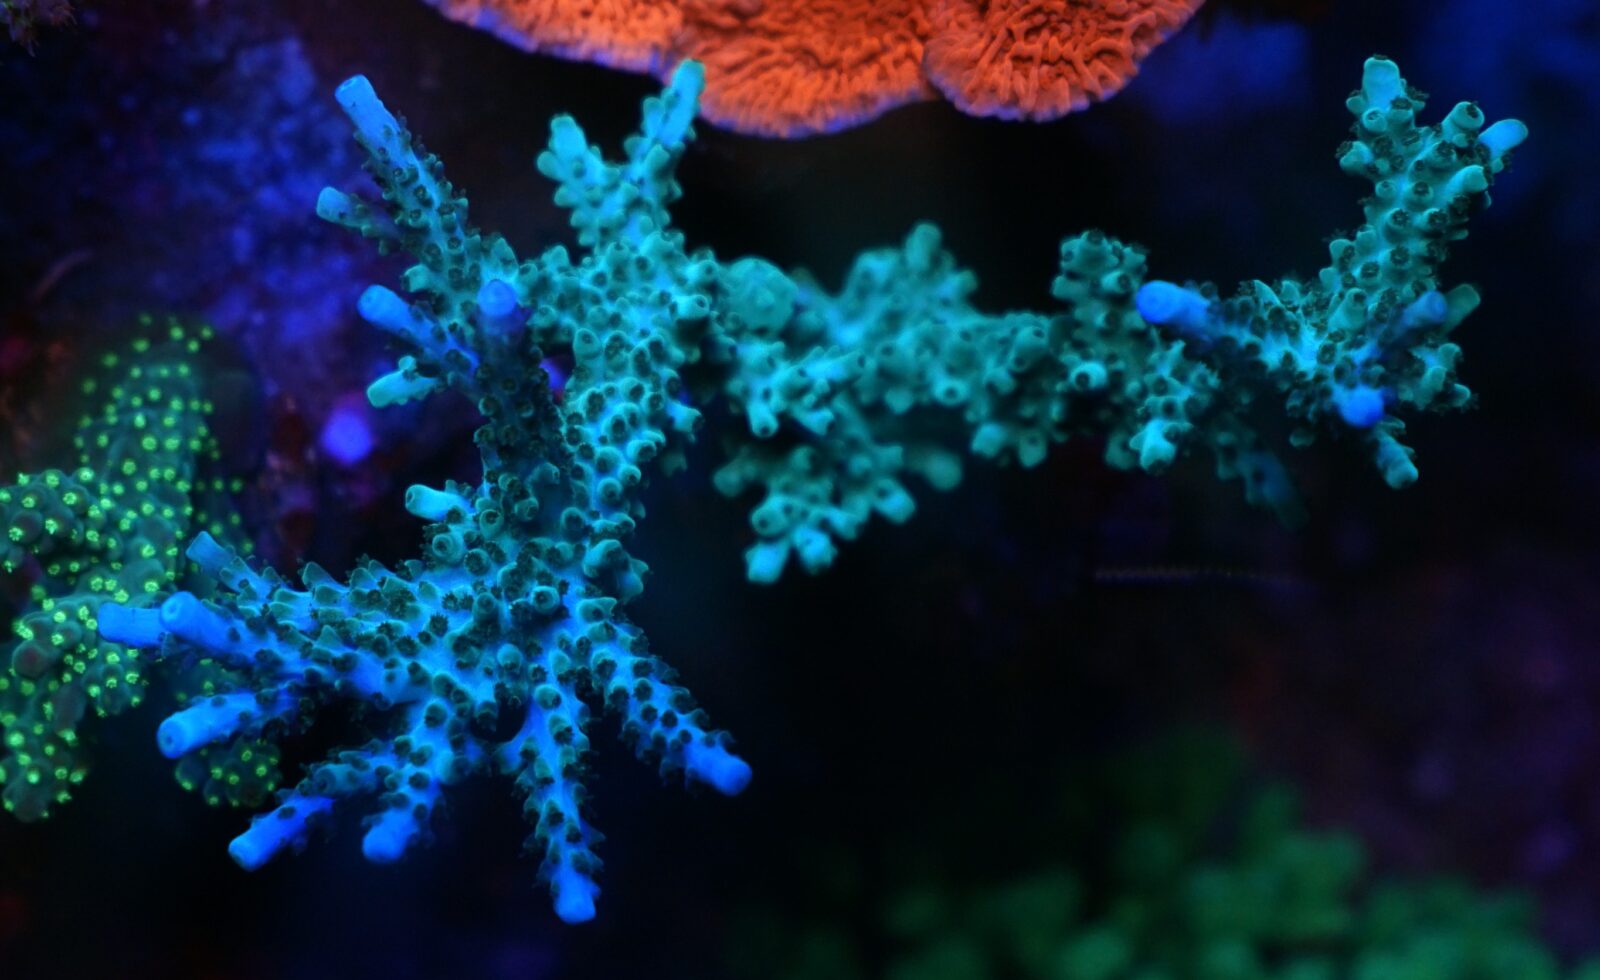 azul profundo verde sps acropora coral